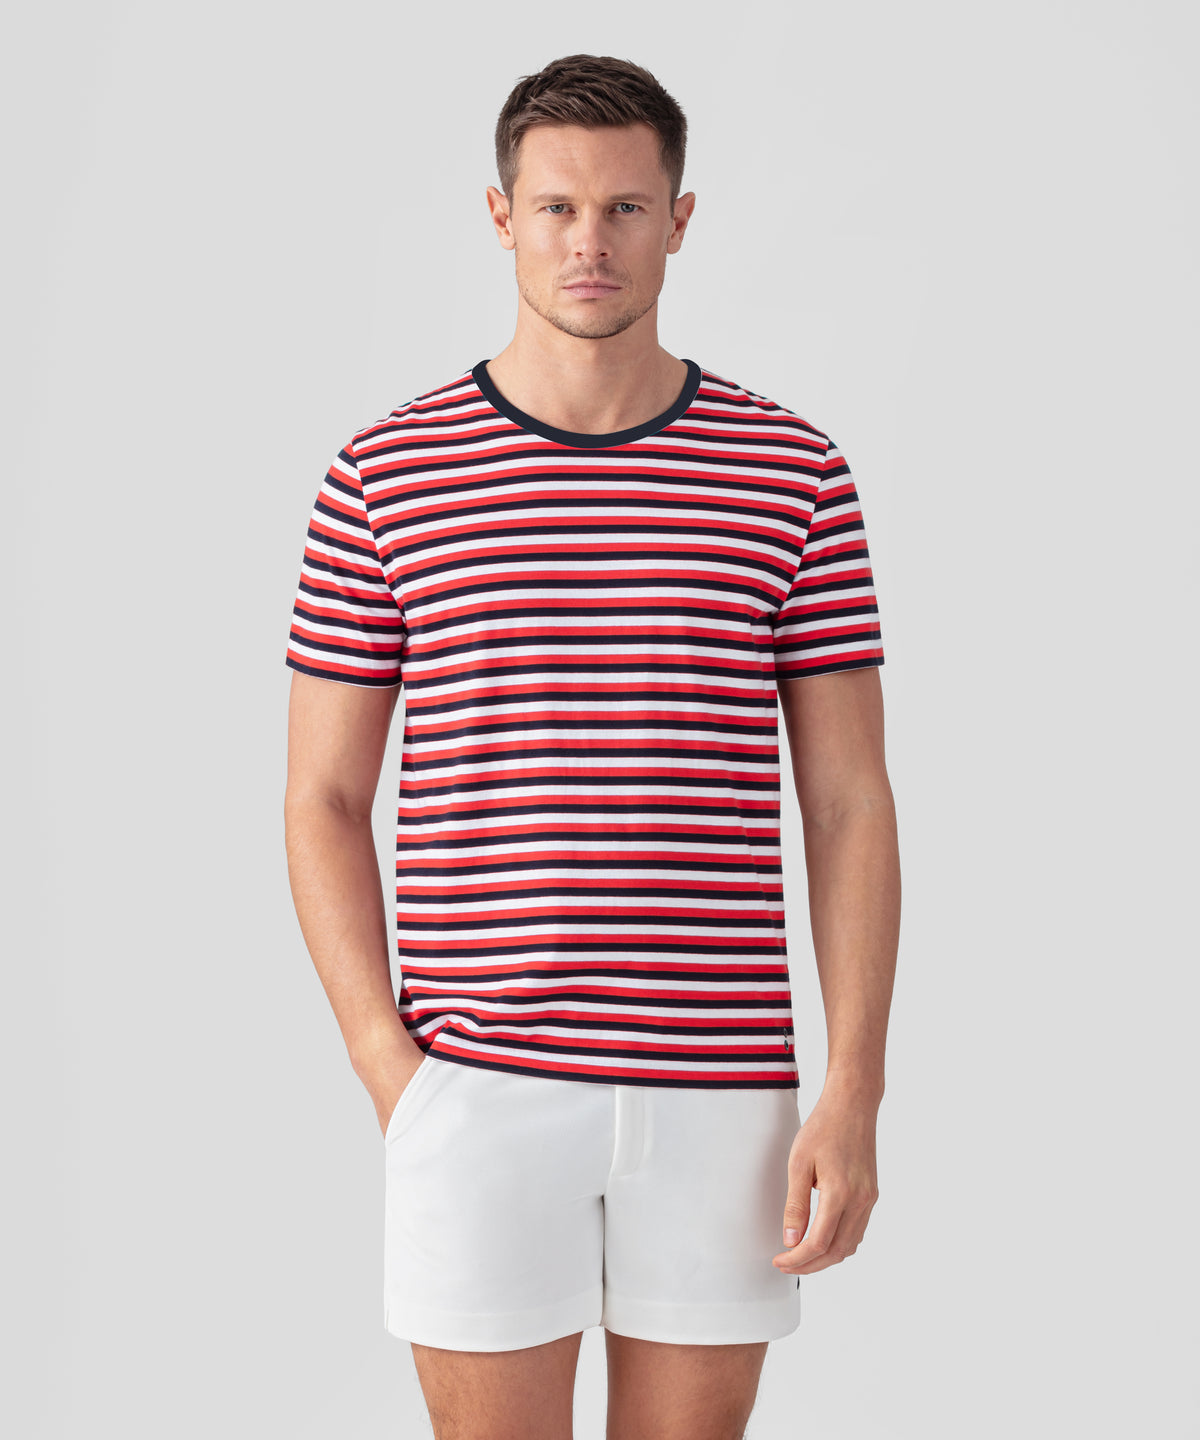 T-shirt col rond en coton avec lignes tricolores: Rouge/Bleu marine/Blanc